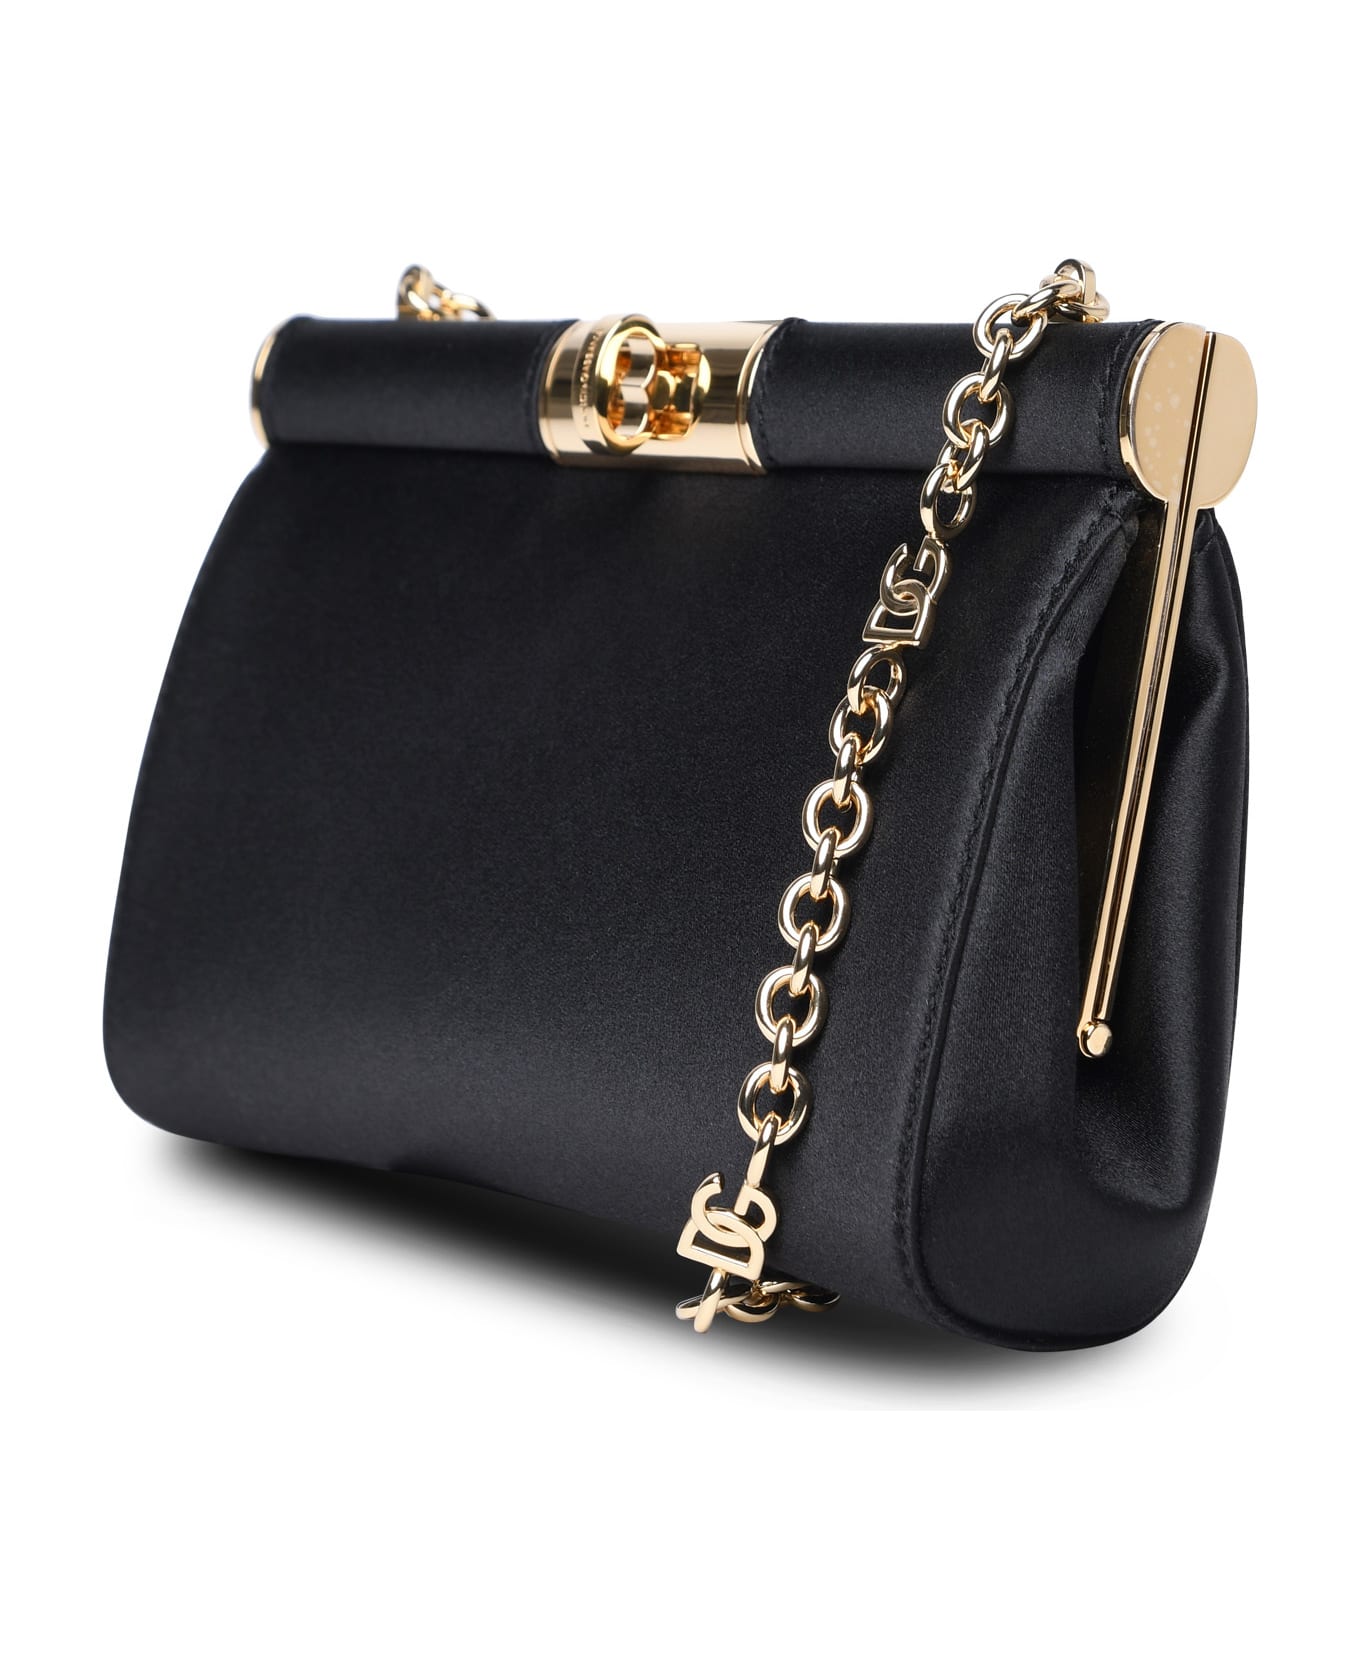 Dolce & Gabbana Black Silk Blend Bag